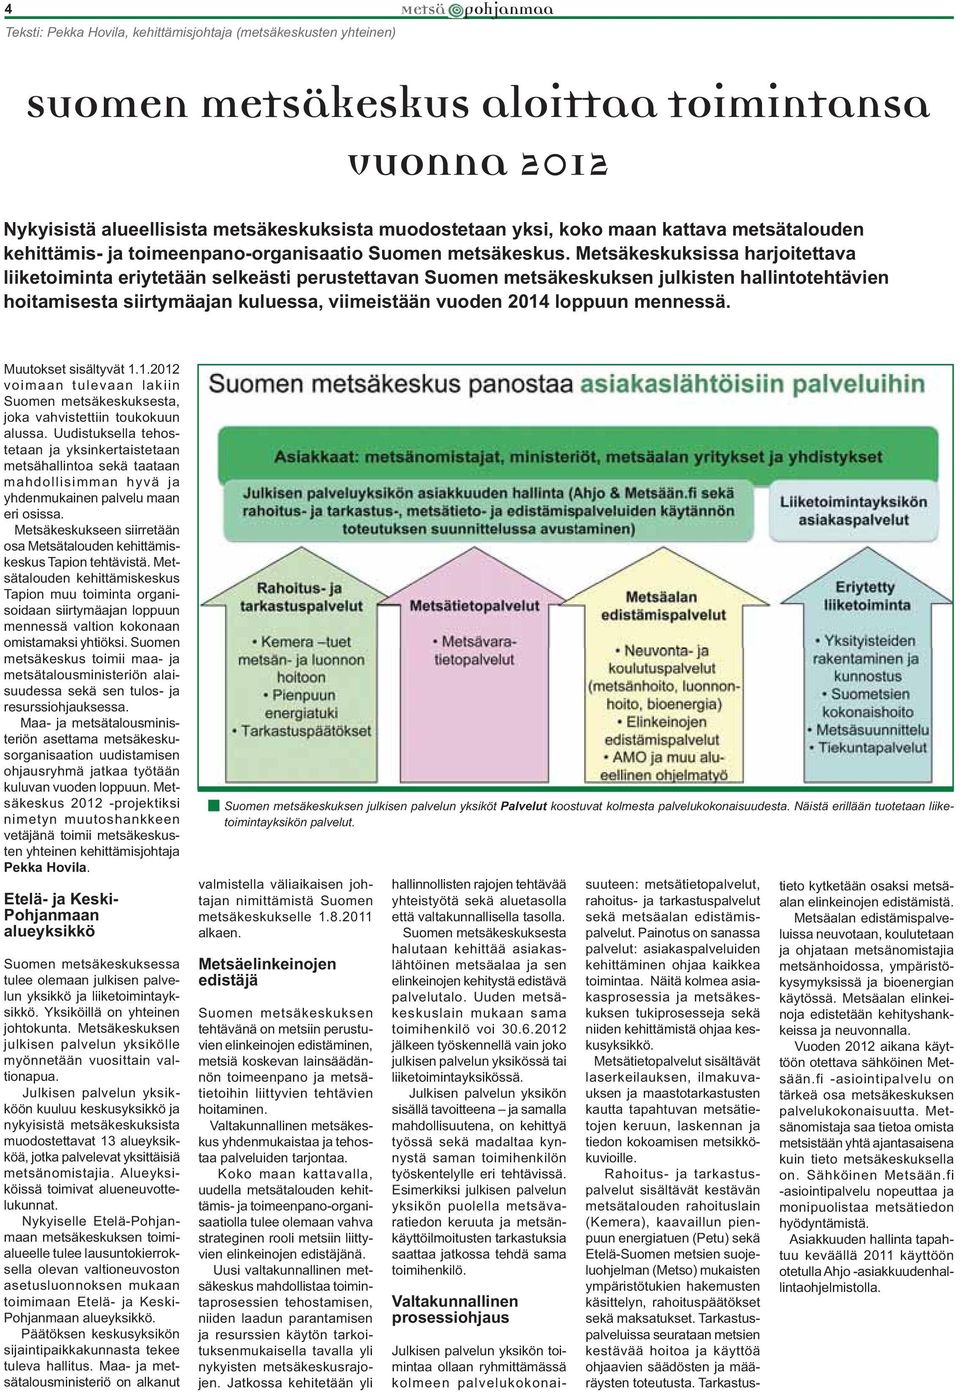 Metsäkeskuksissa harjoitettava liiketoiminta eriytetään selkeästi perustettavan Suomen metsäkeskuksen julkisten hallintotehtävien hoitamisesta siirtymäajan kuluessa, viimeistään vuoden 2014 loppuun